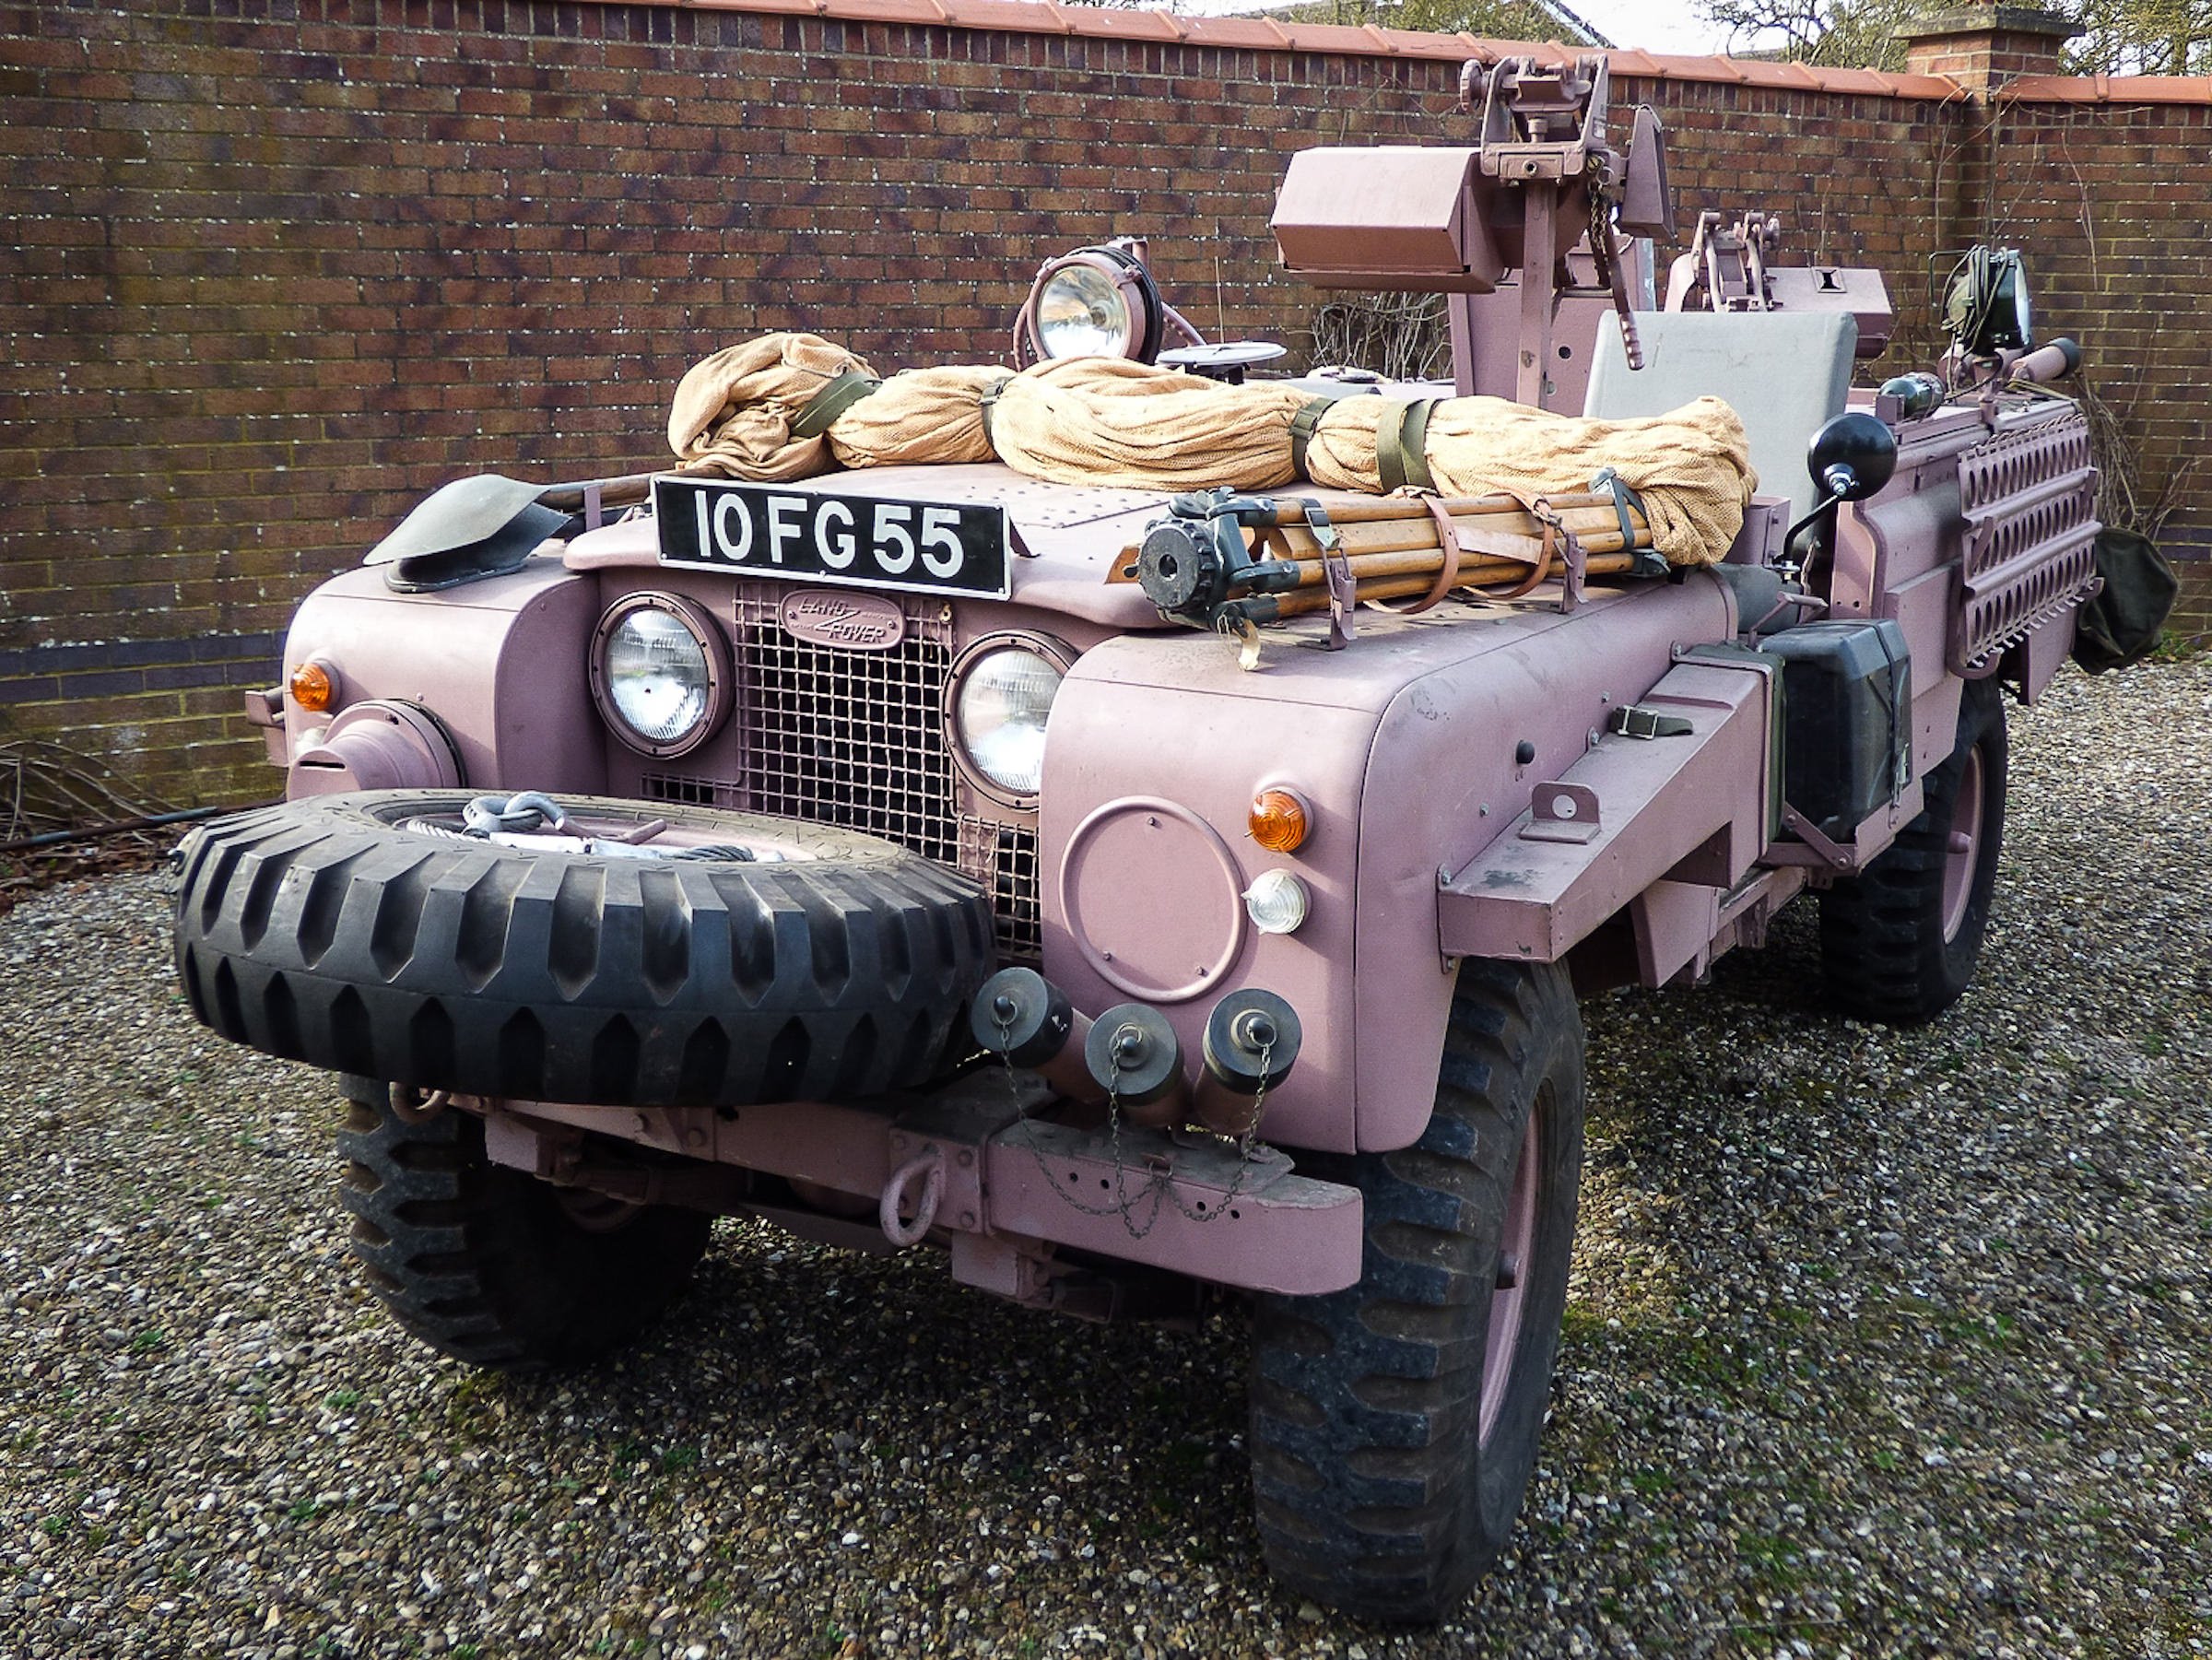 An Original SAS Land Rover Series 2A 109 Pink Panther - The "Pinkie"